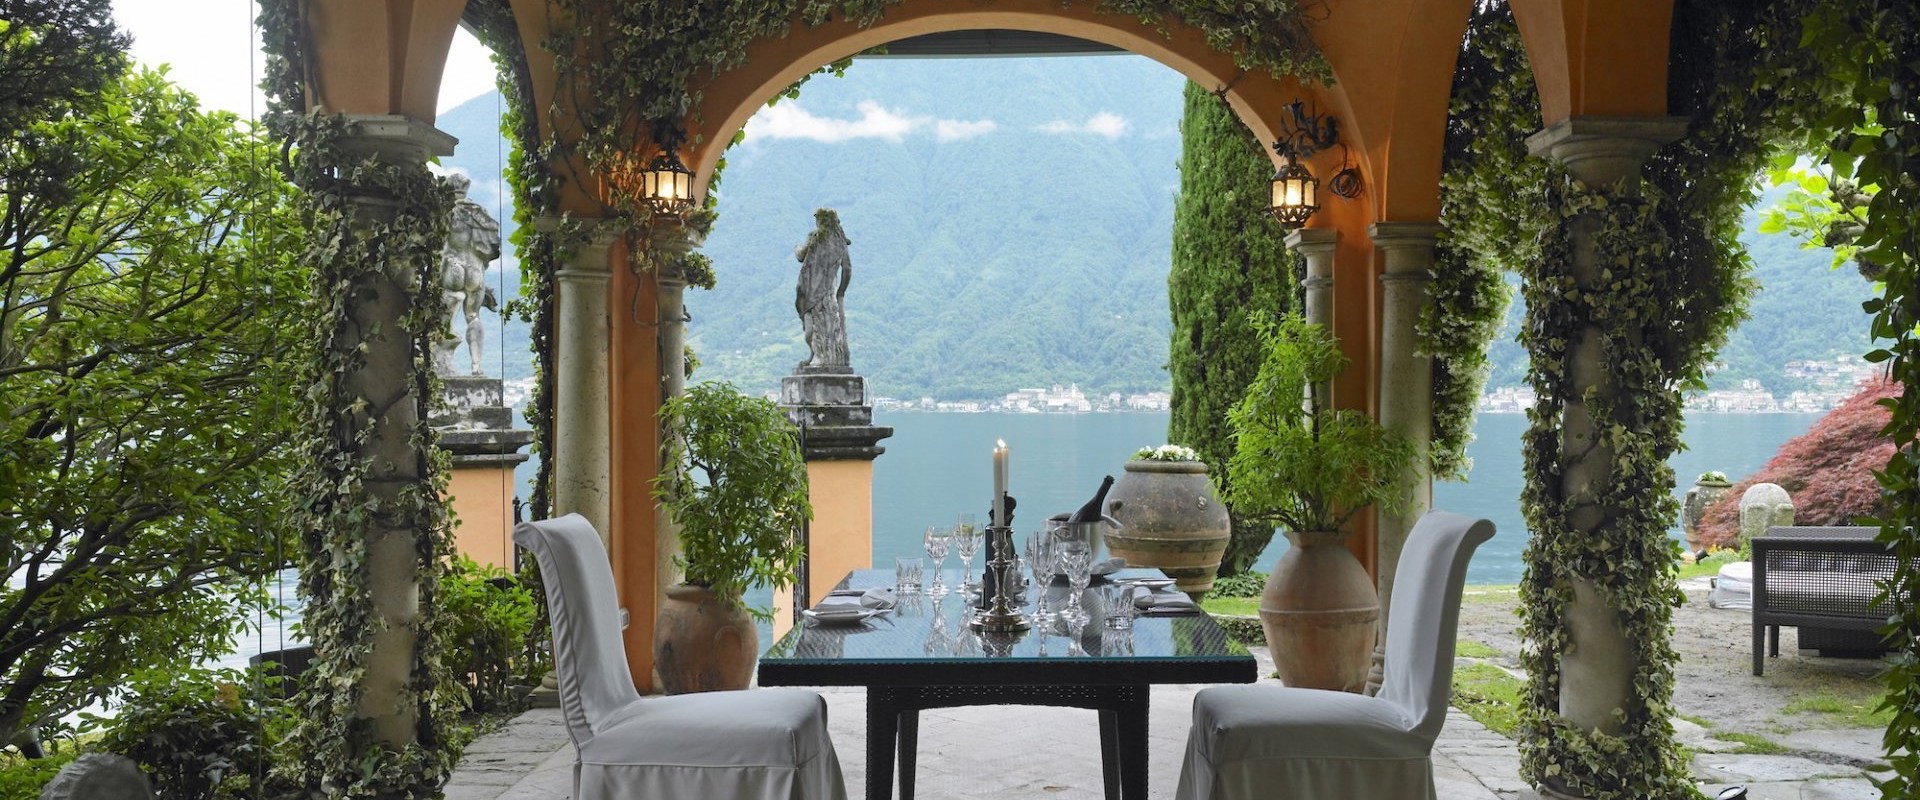 Private Villa: The Perfect Destination Wedding Venue